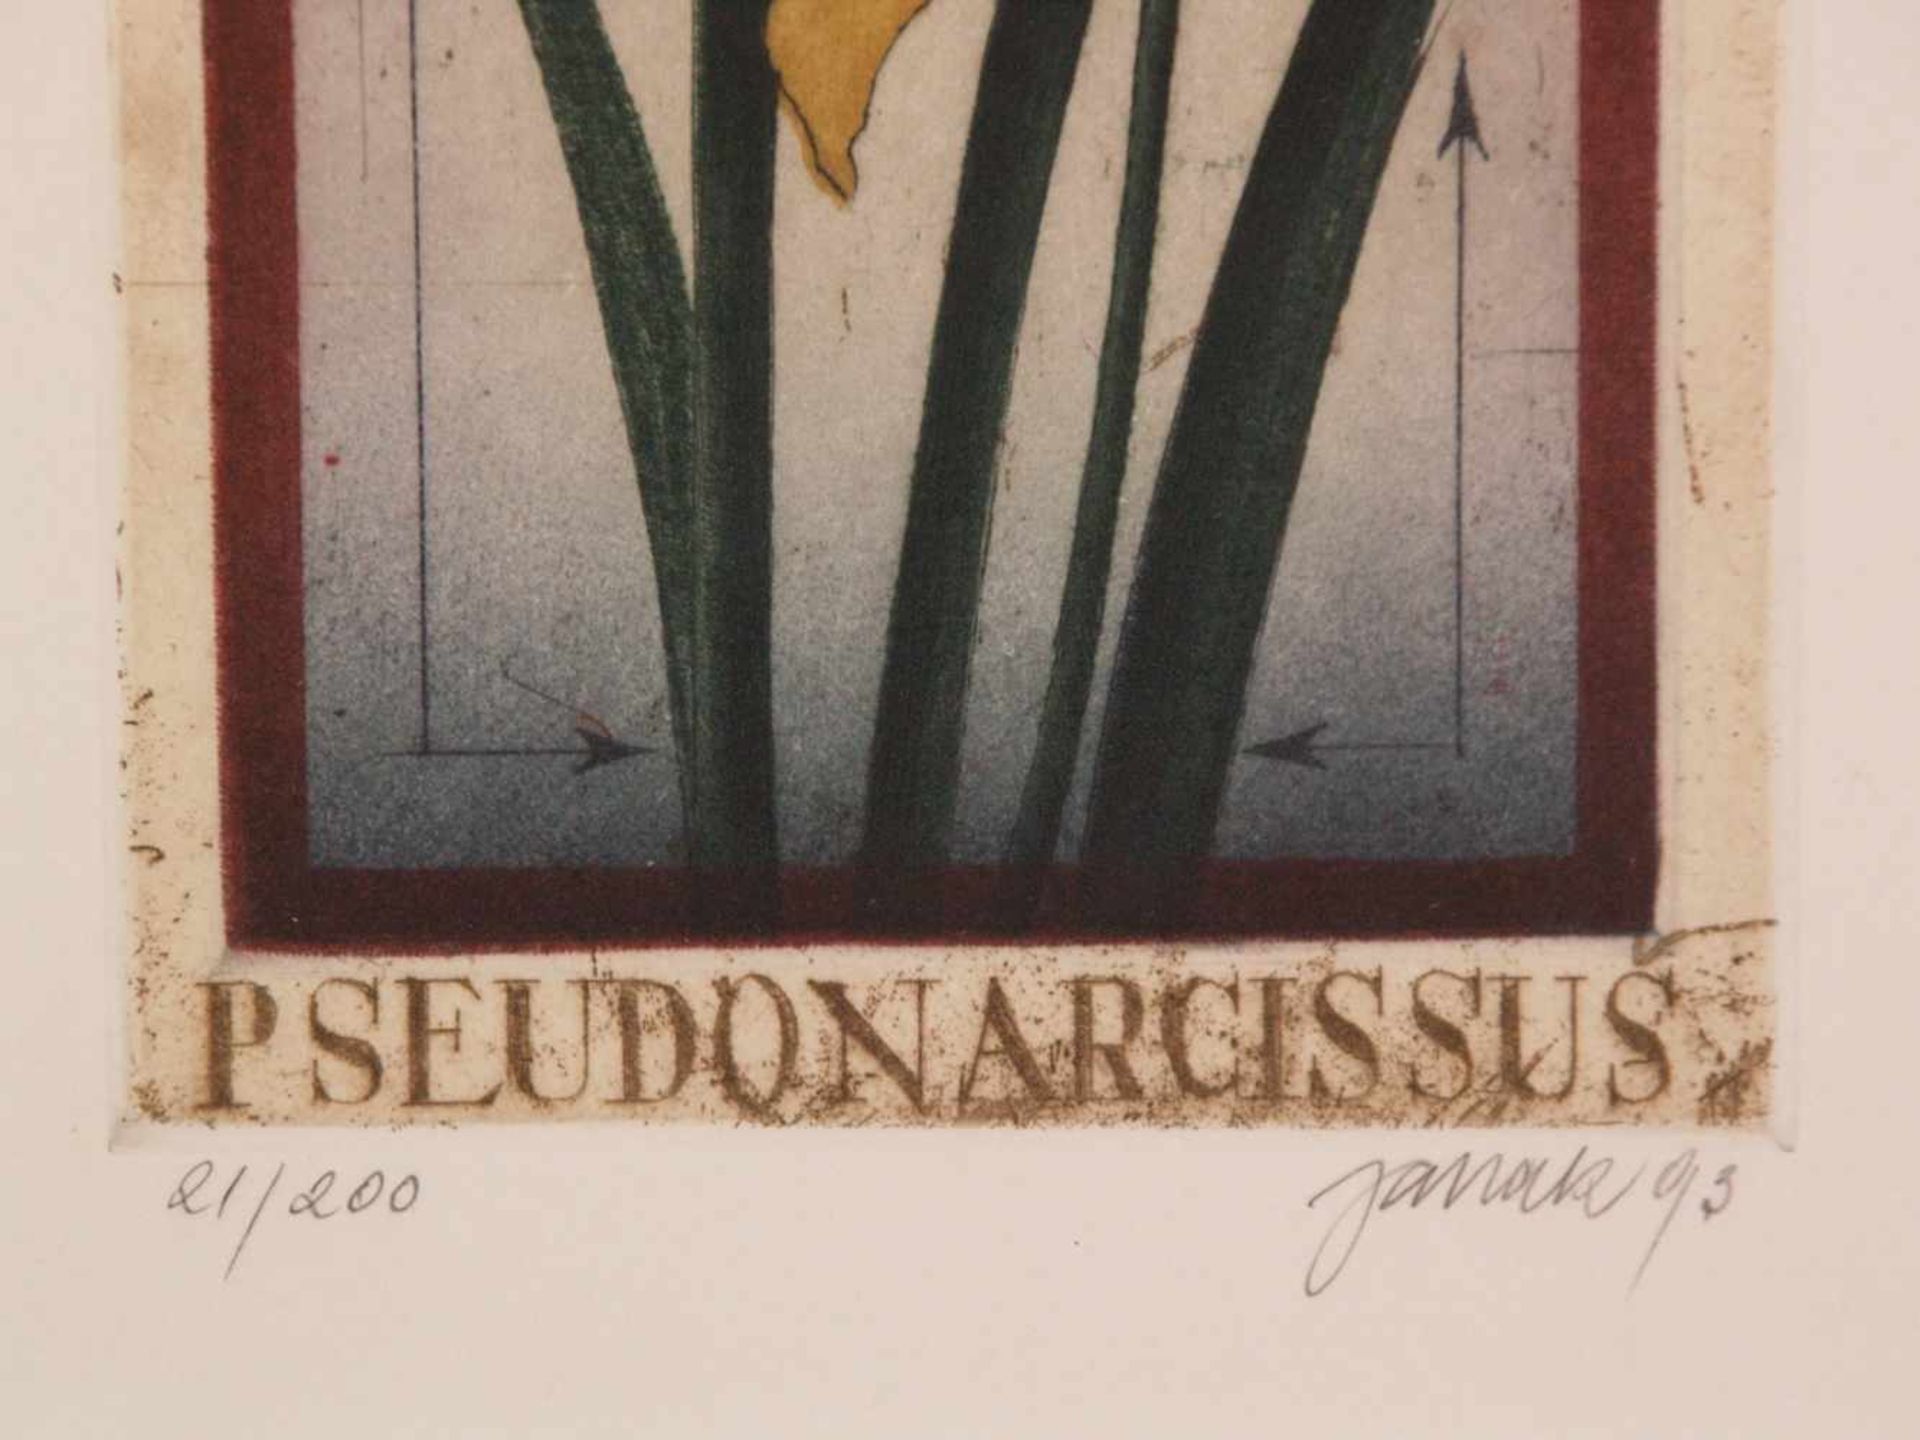 Janak, Alois (tschechischer Künstler geb. 1924 Schönpriesen) - 2 Farbradierungen: Blumen,in Blei - Bild 4 aus 4